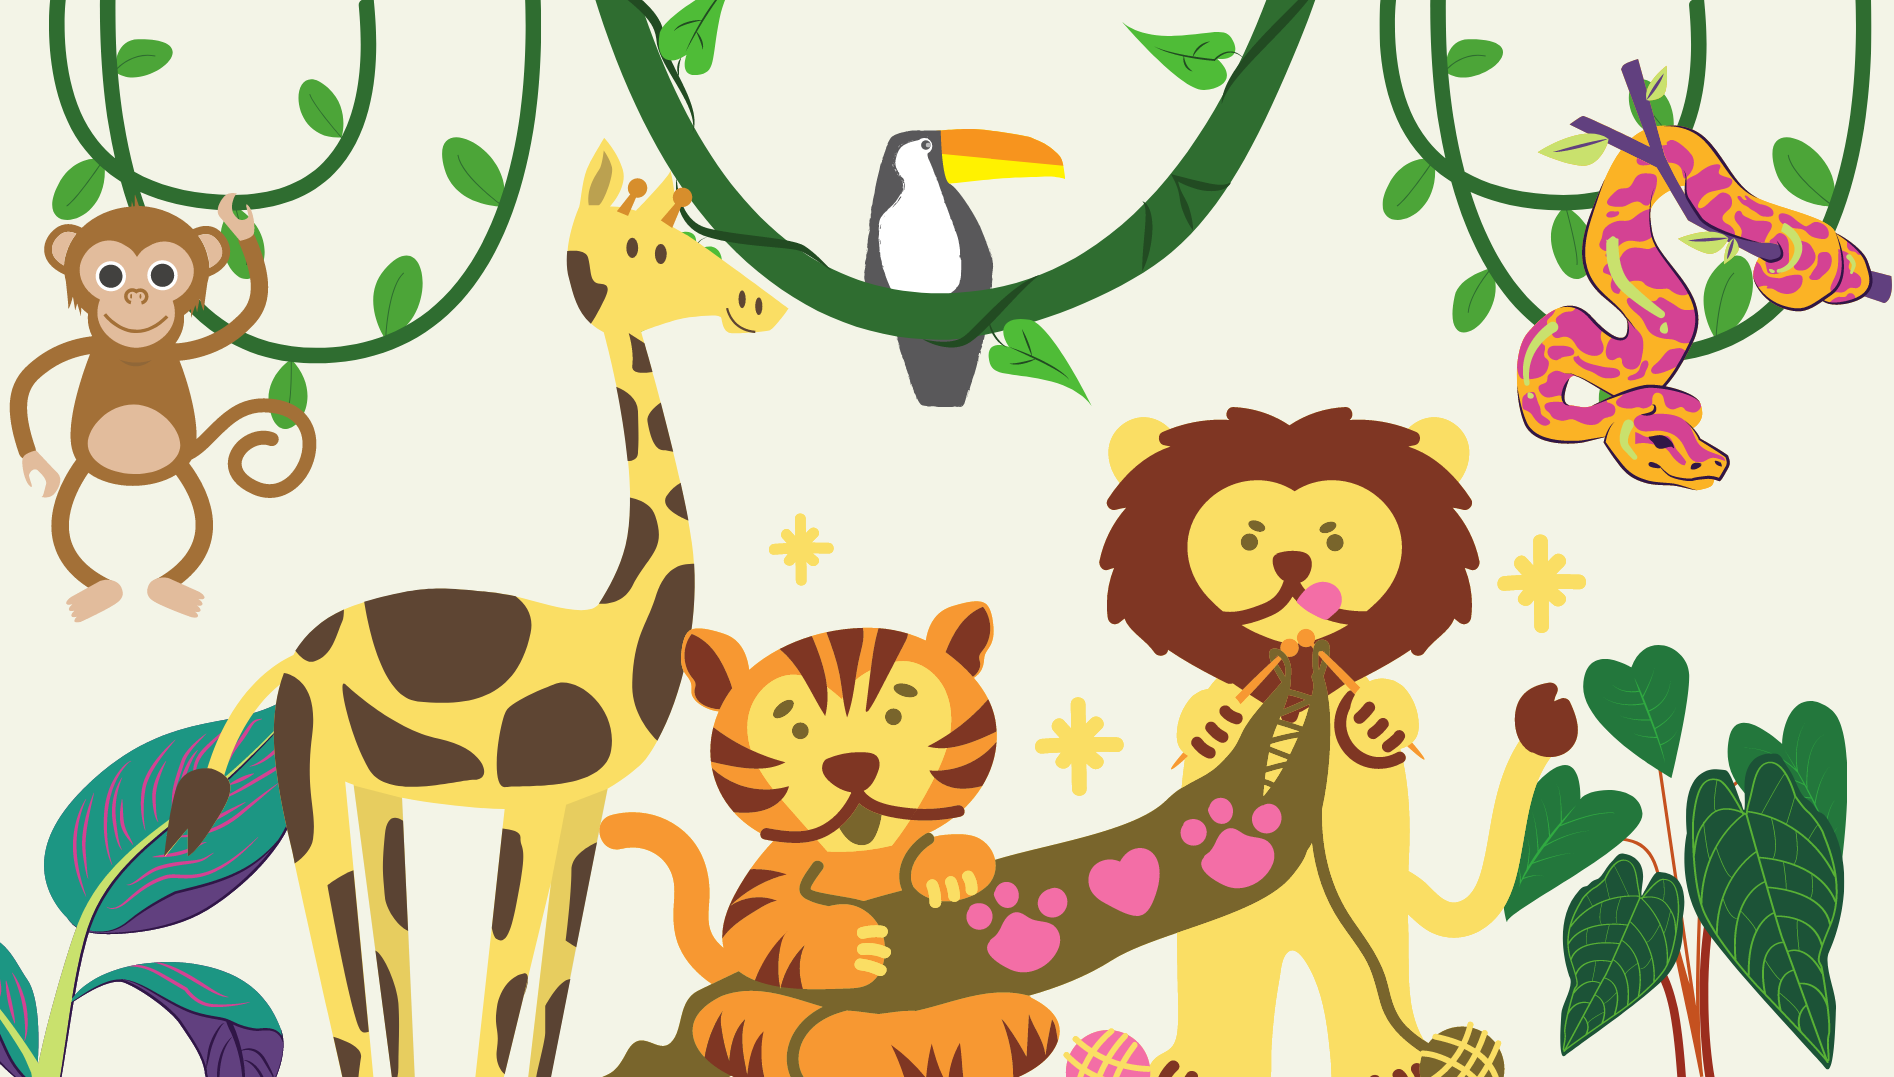 La imagen muestra una selva con animales y plantas